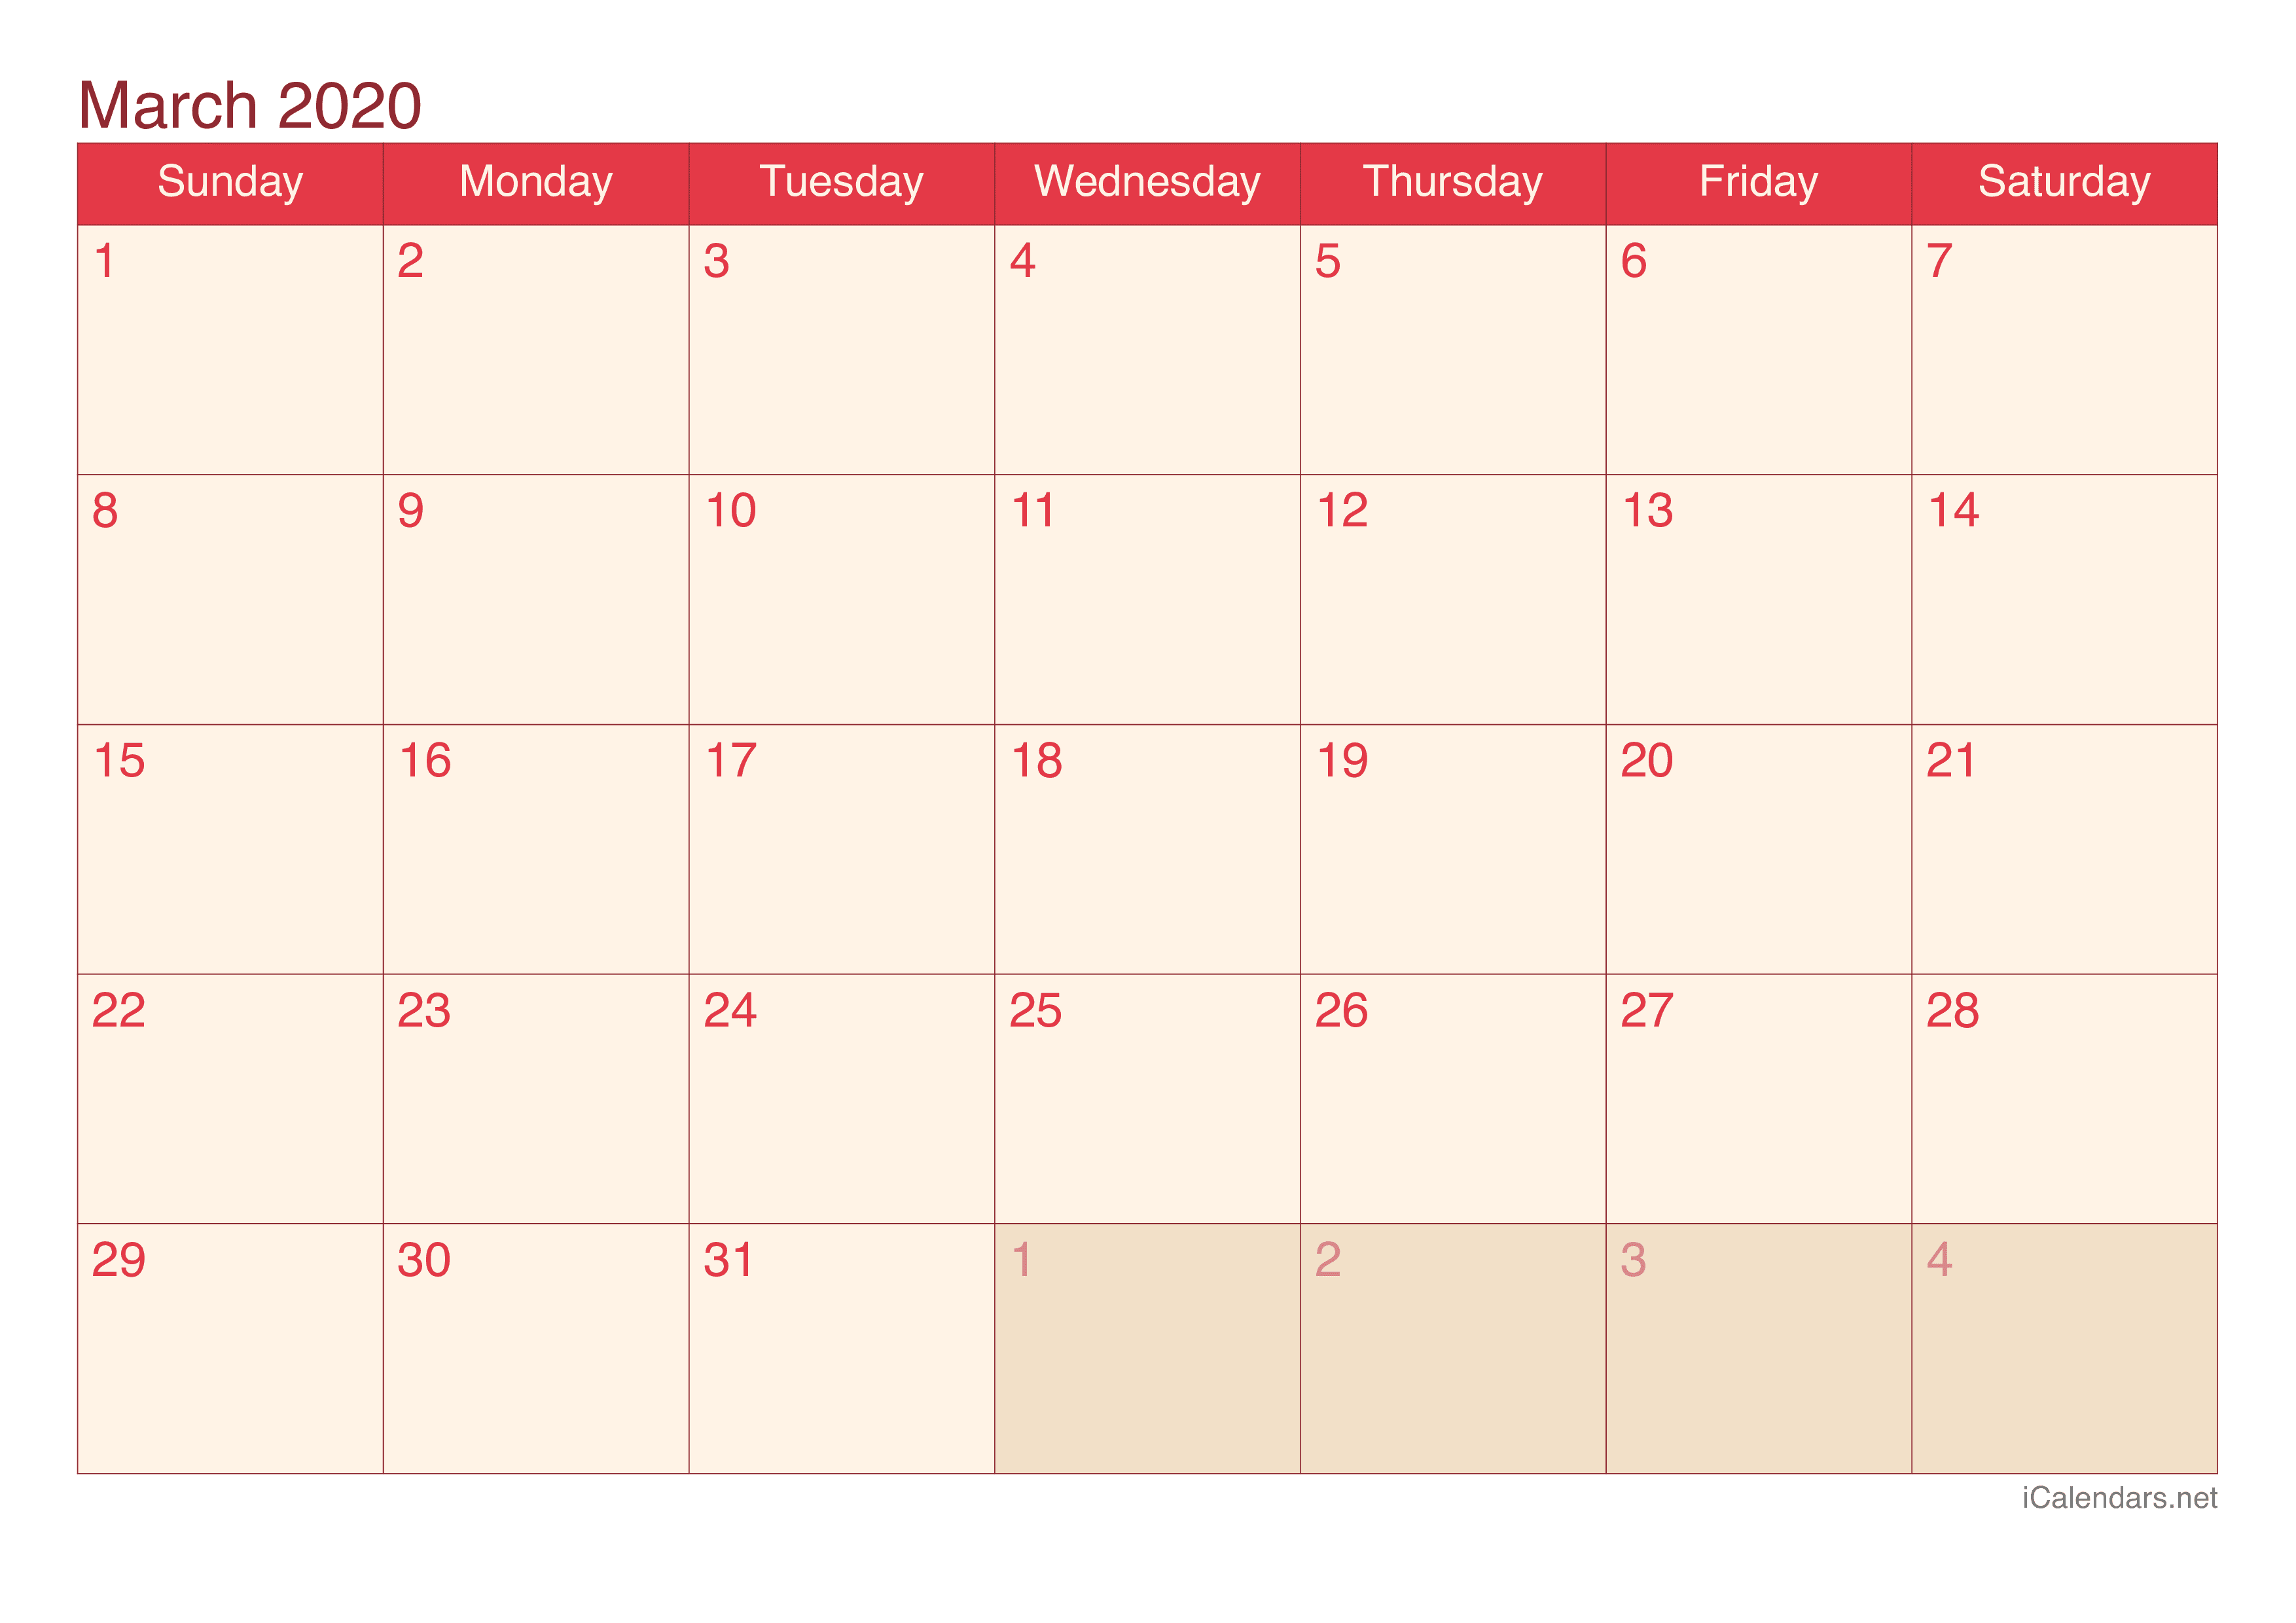 2020 March Calendar - Cherry